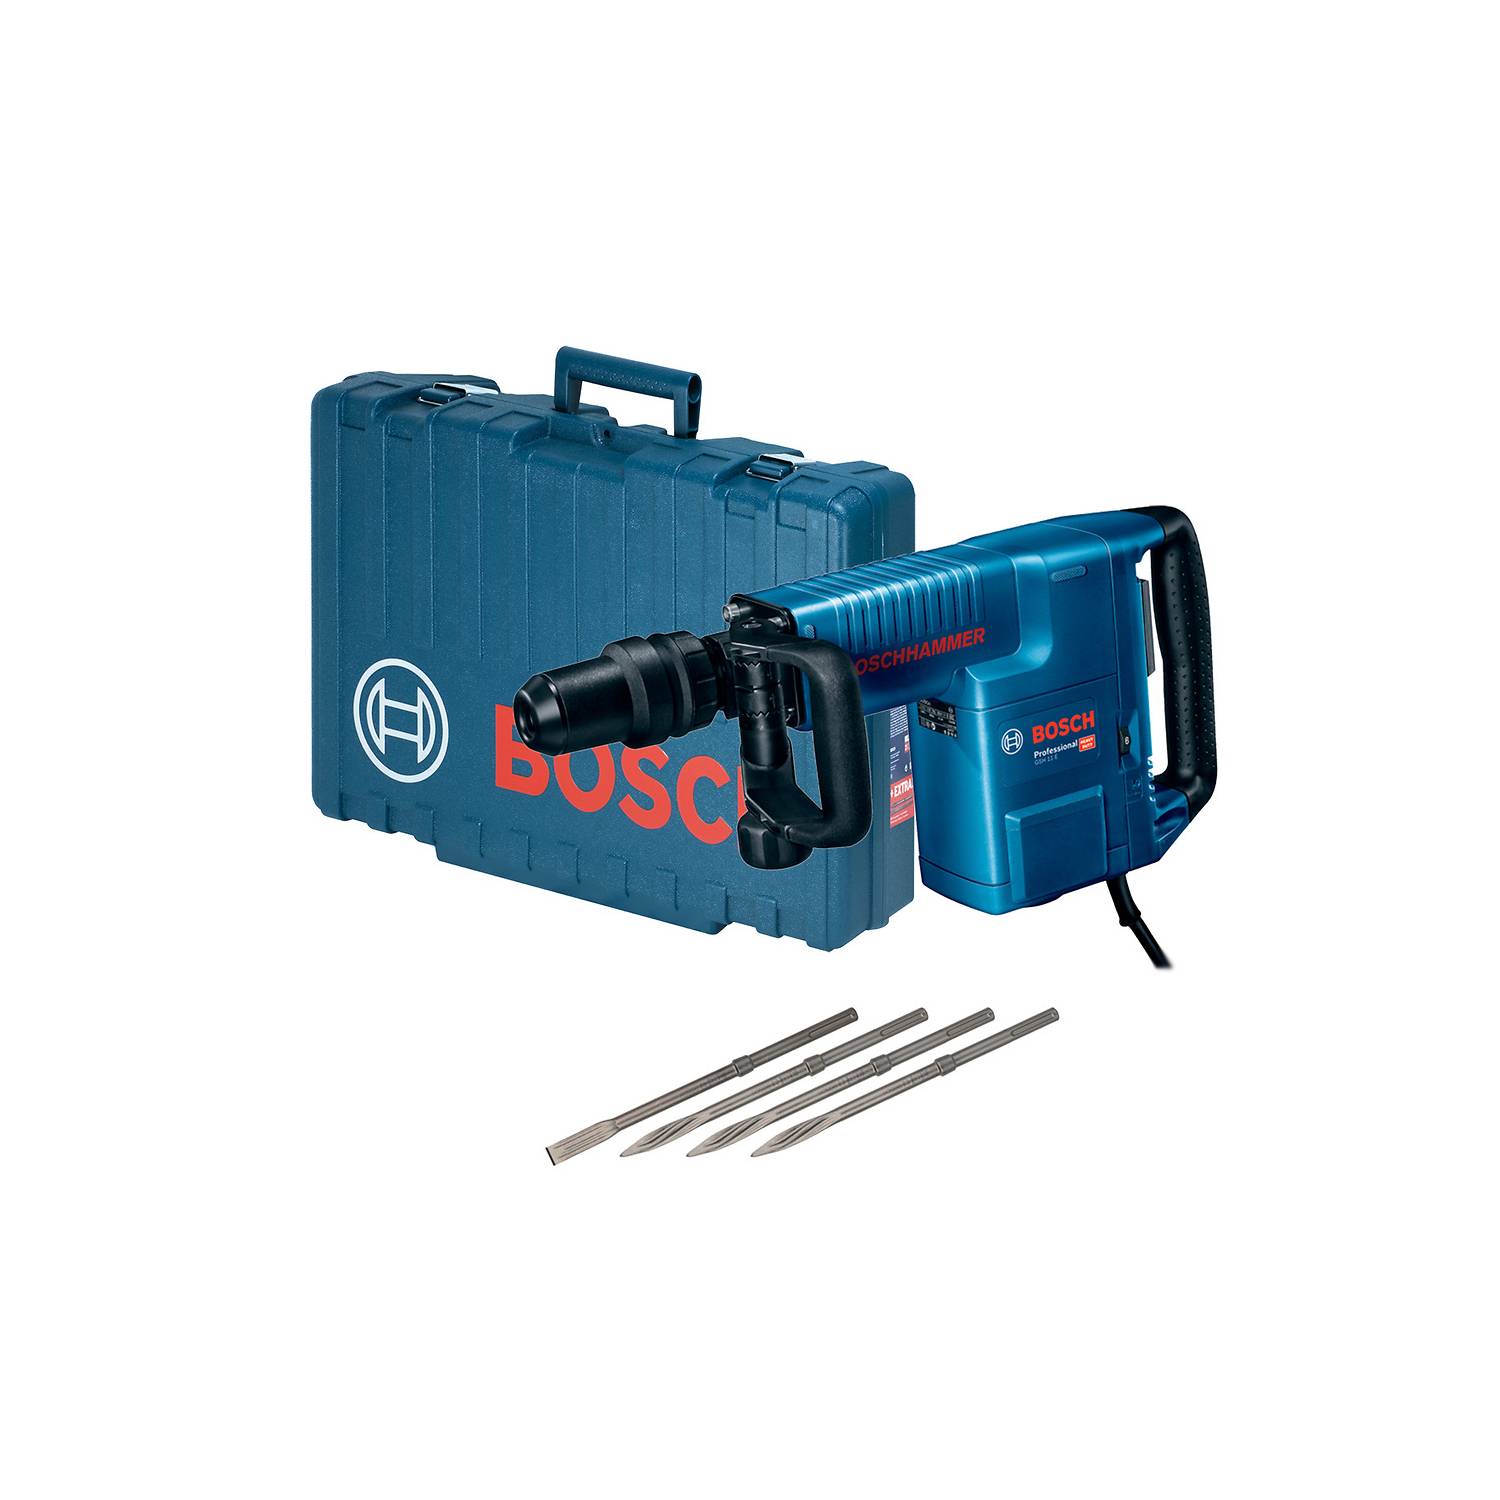 06113168G0 Martillo demoledor Bosch GSH 11 E 1500W con 4 cinceles y maletín  – Bosch Store Online